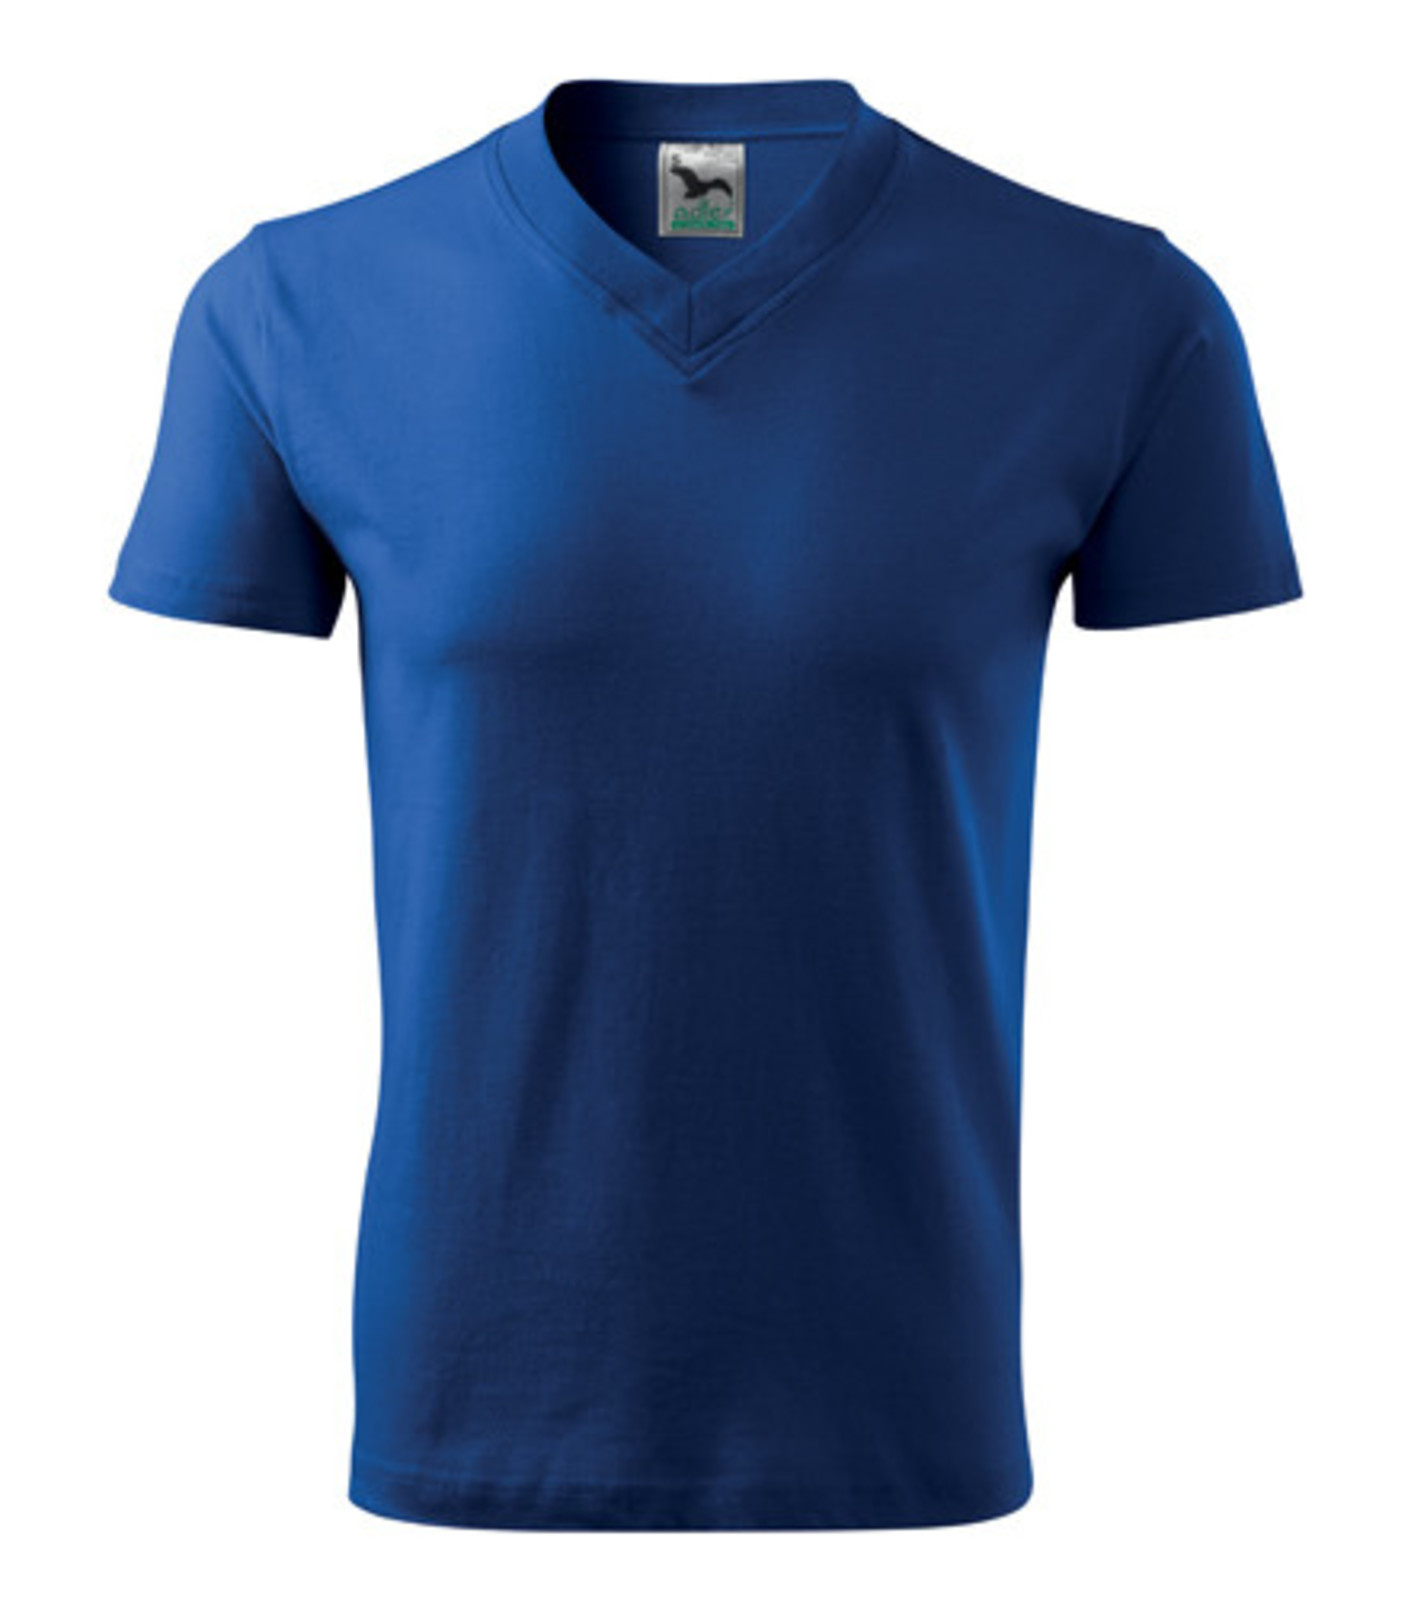 Unisex tričko s výstrihom Adler V-Neck 102 - veľkosť: 3XL, farba: kráľovská modrá